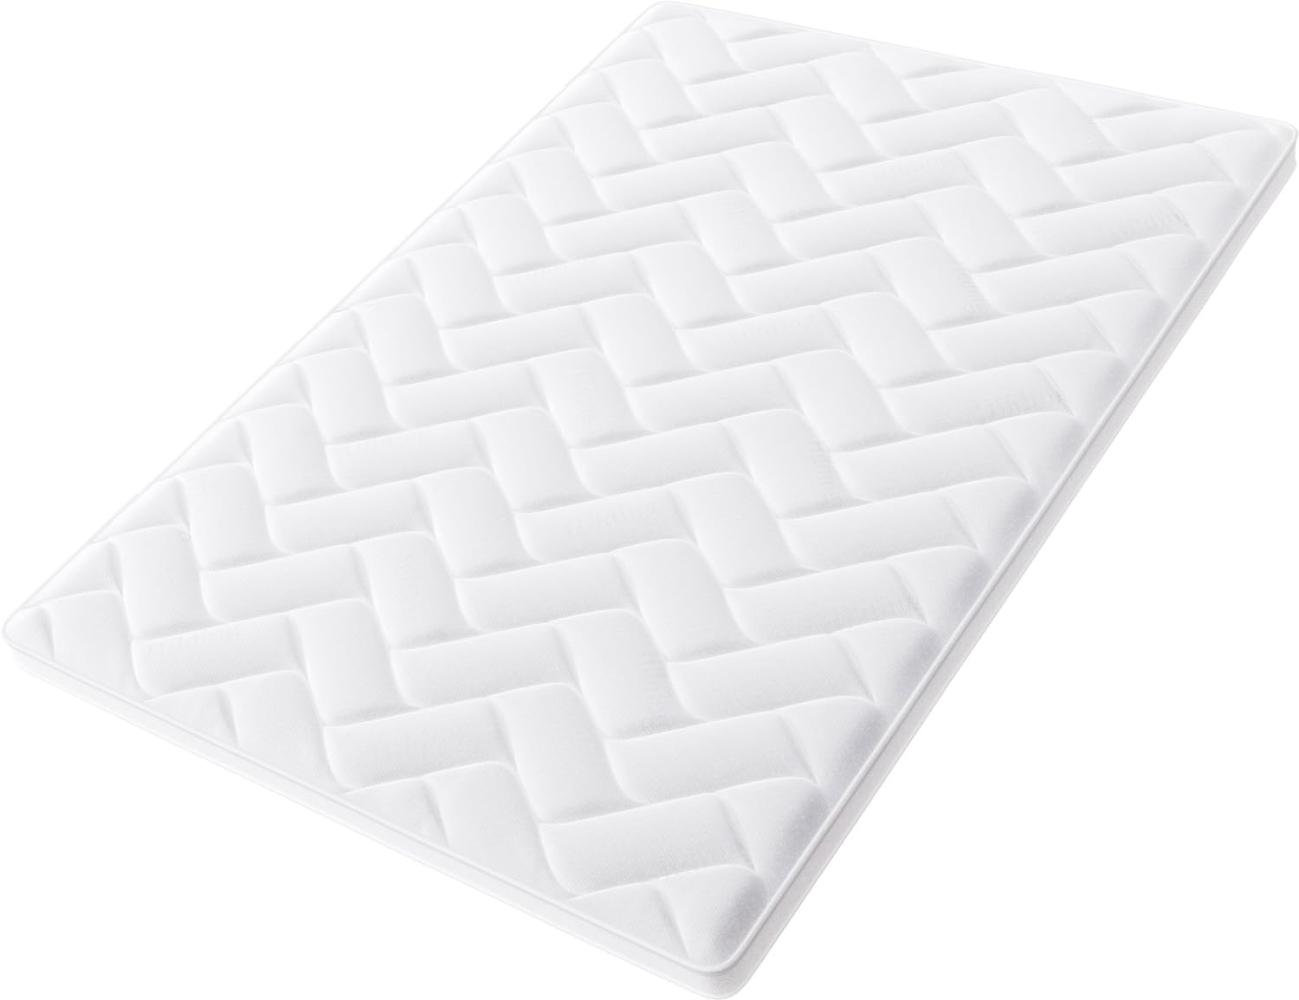 Hilding Sweden Nature Matratzentopper, aus Latex, Weiche Matratzenauflage für besseren Schlafkomfort, 200 x 200 cm, weiß Bild 1